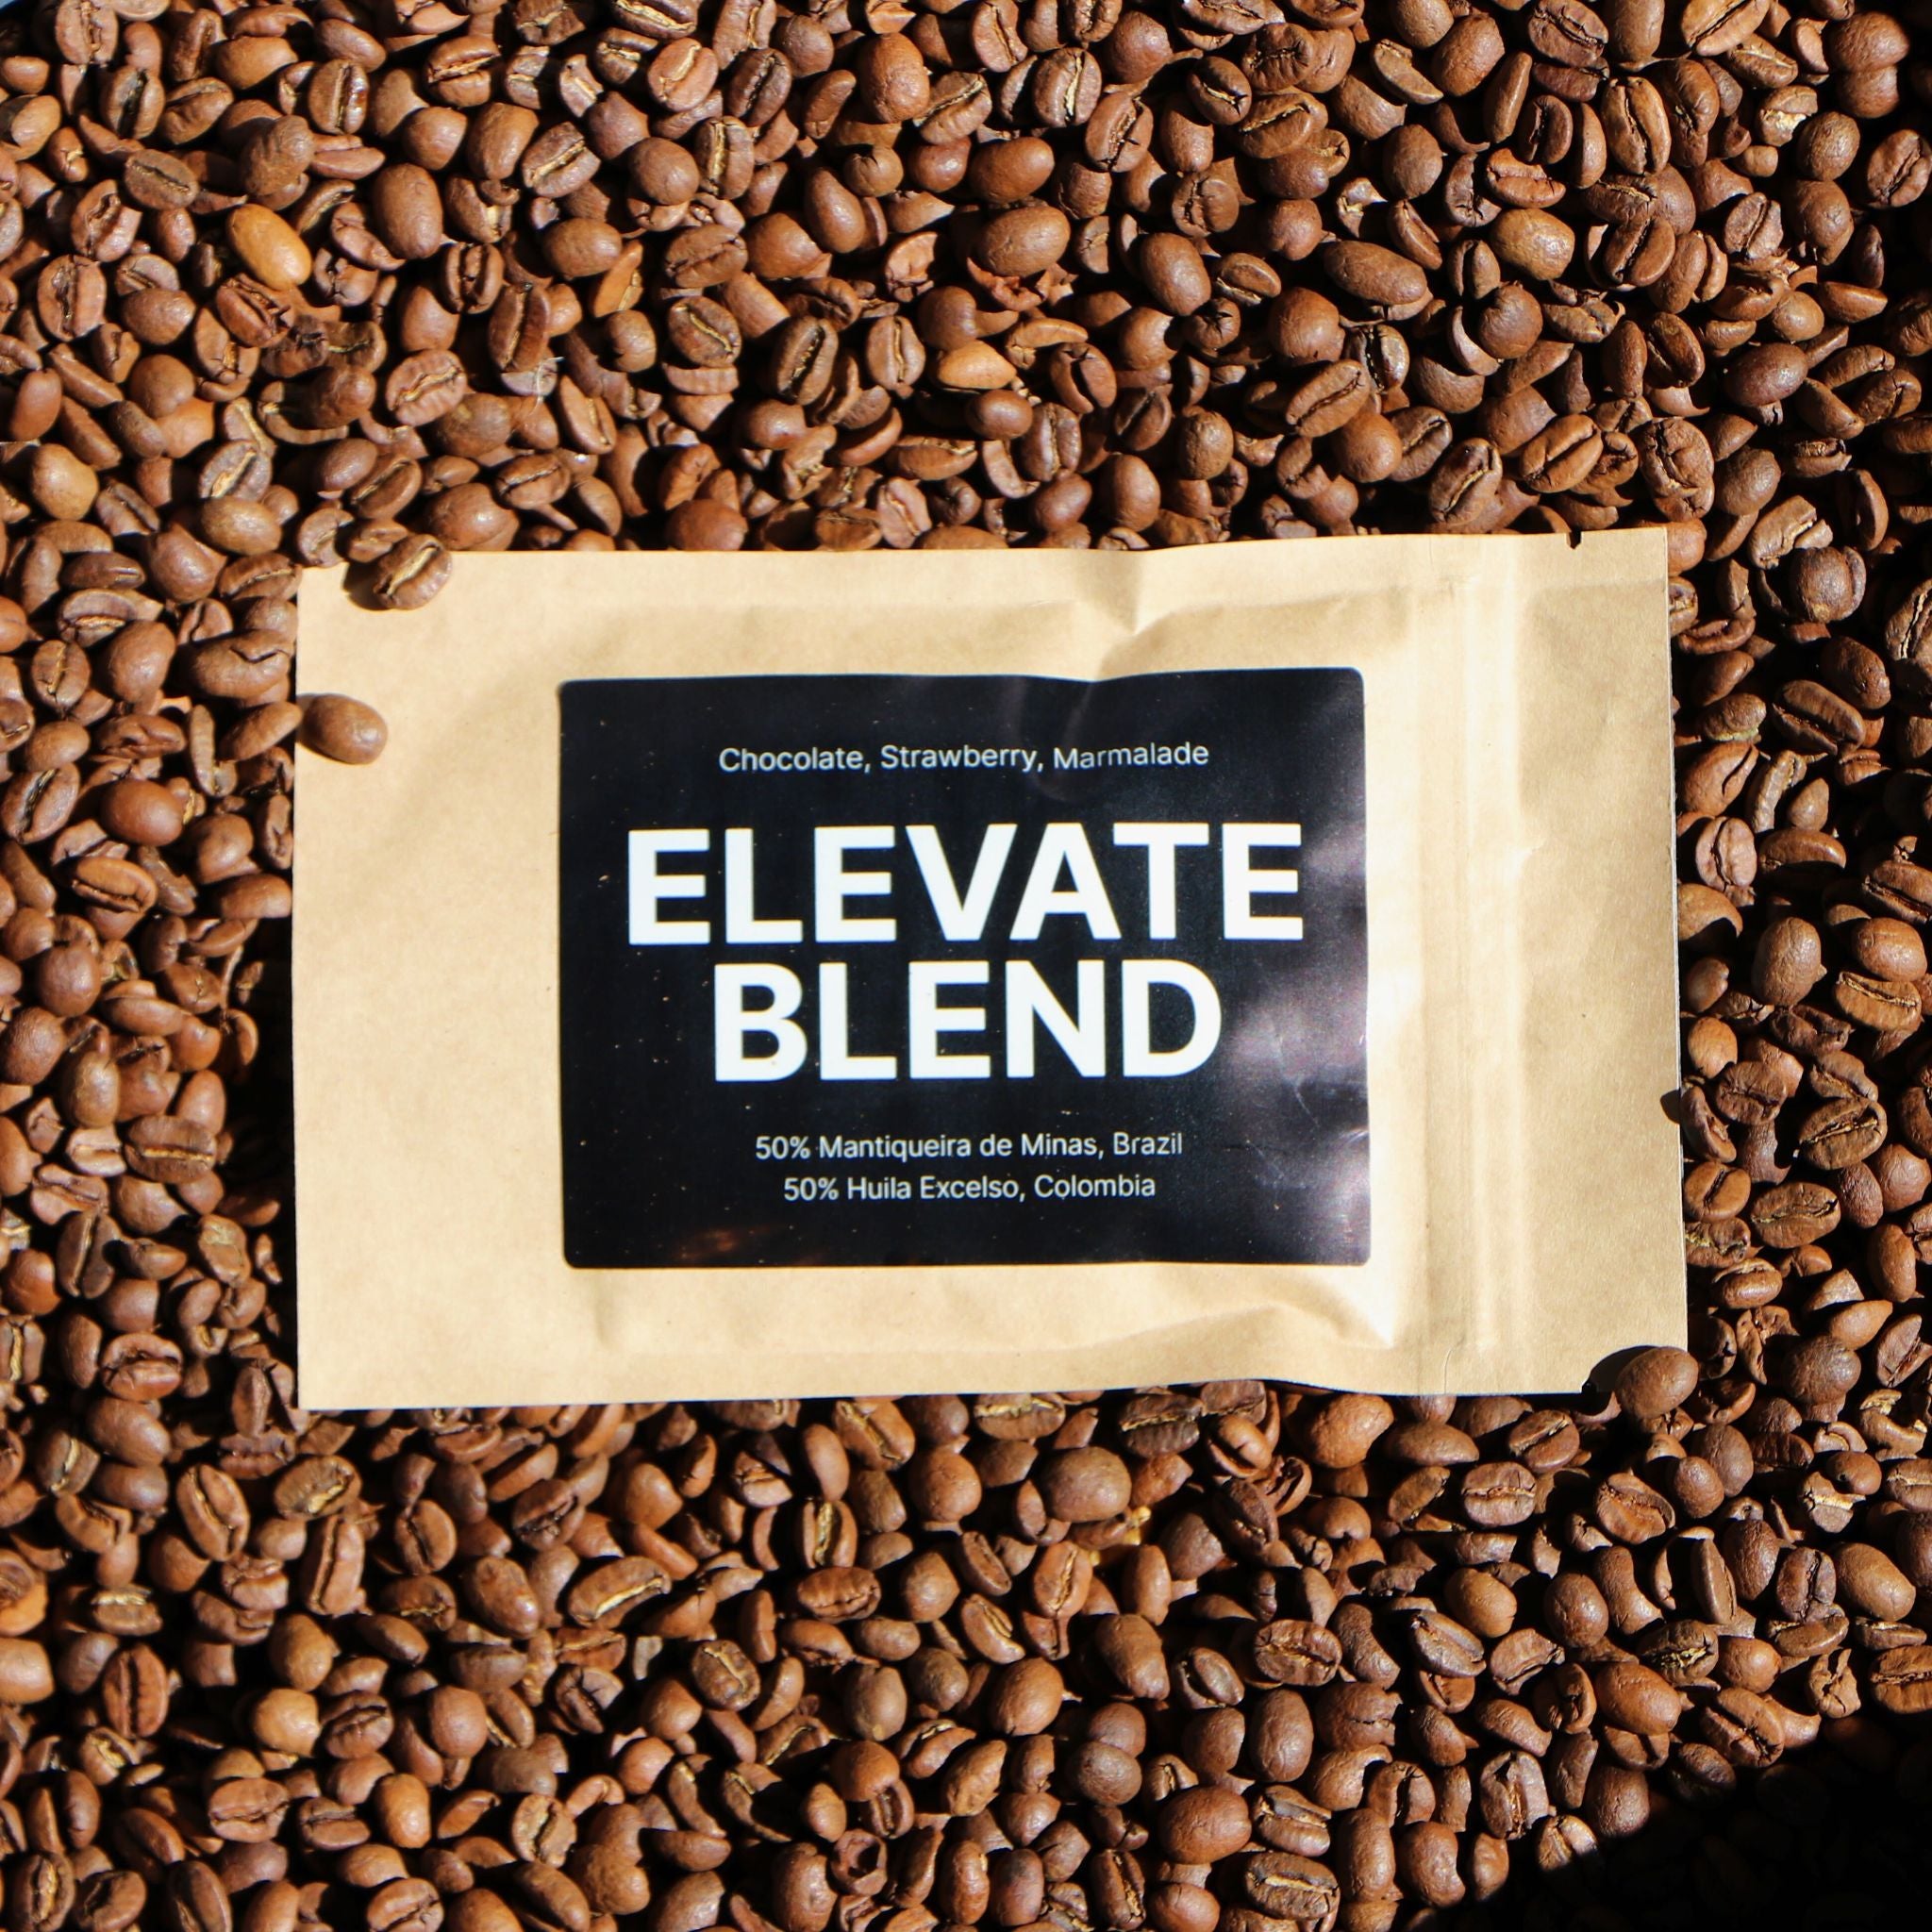 Coffee on Cue Elevate Blend free sample bag